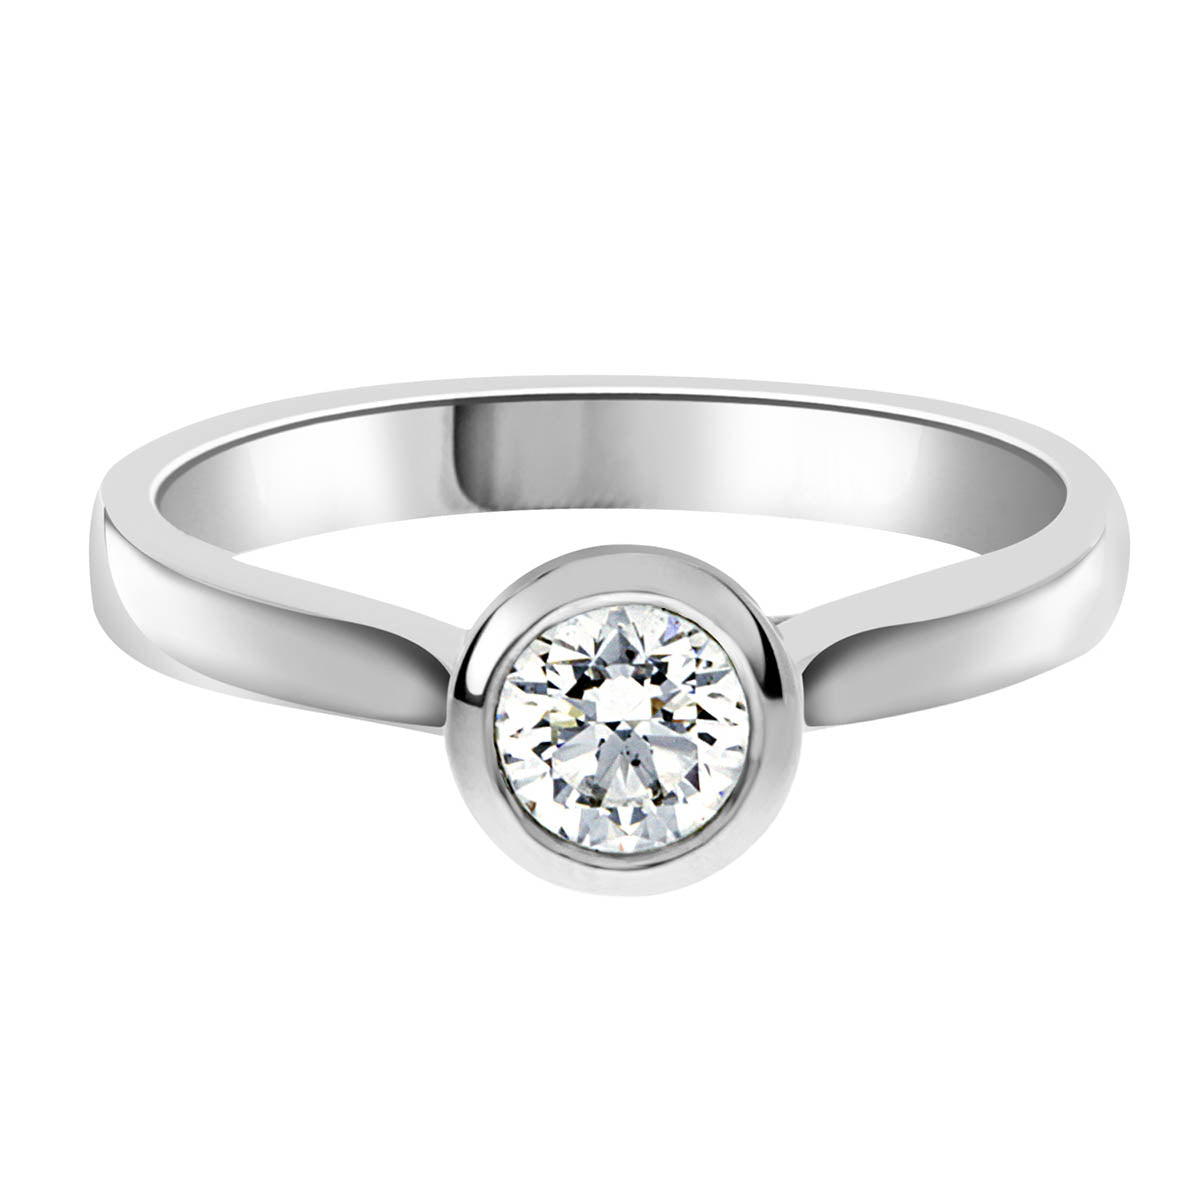 Bezel Set Engagement ring in white gold